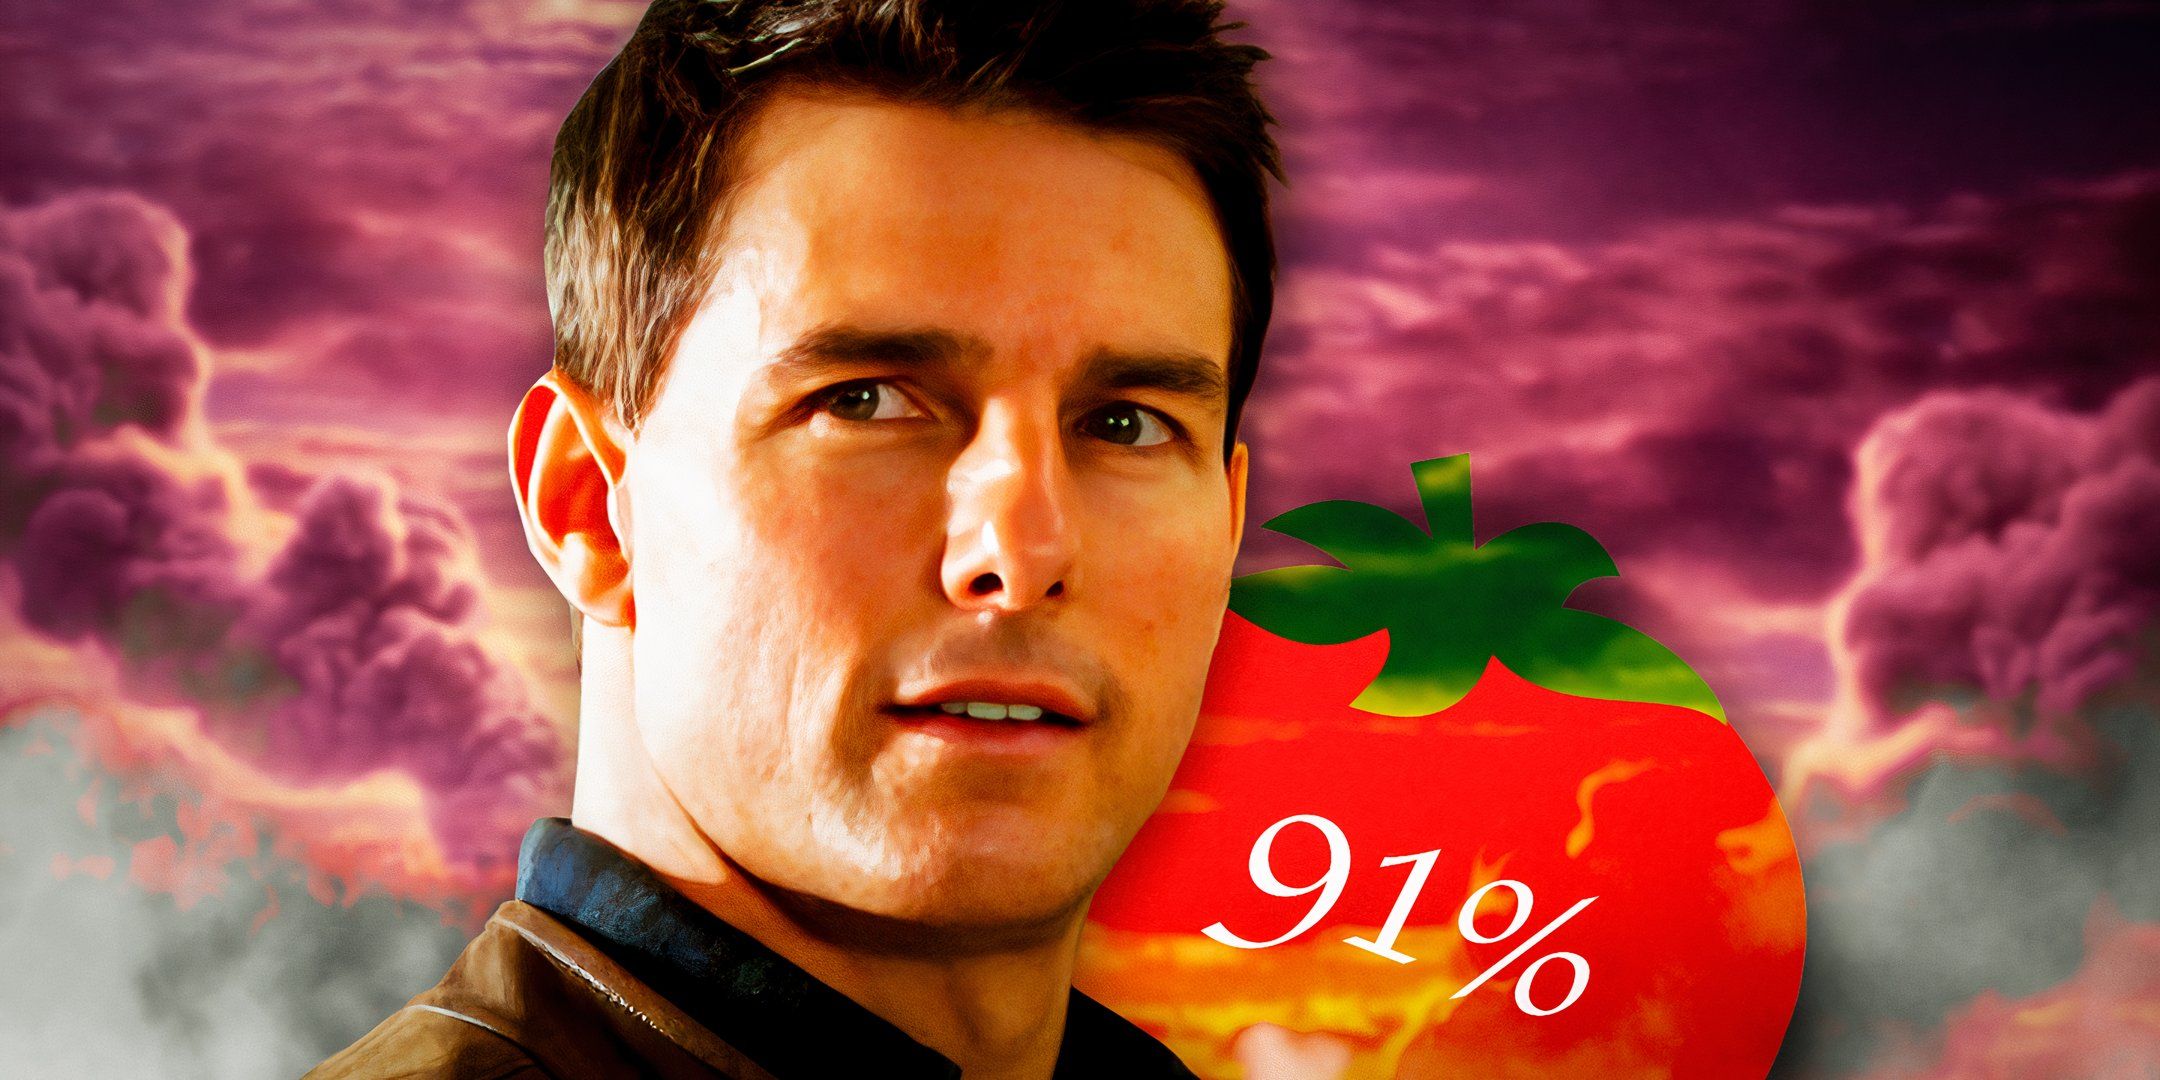 La subestimada película de ciencia ficción de Tom Cruise que tiene un 91% de rating en RT necesita una secuela 10 años después